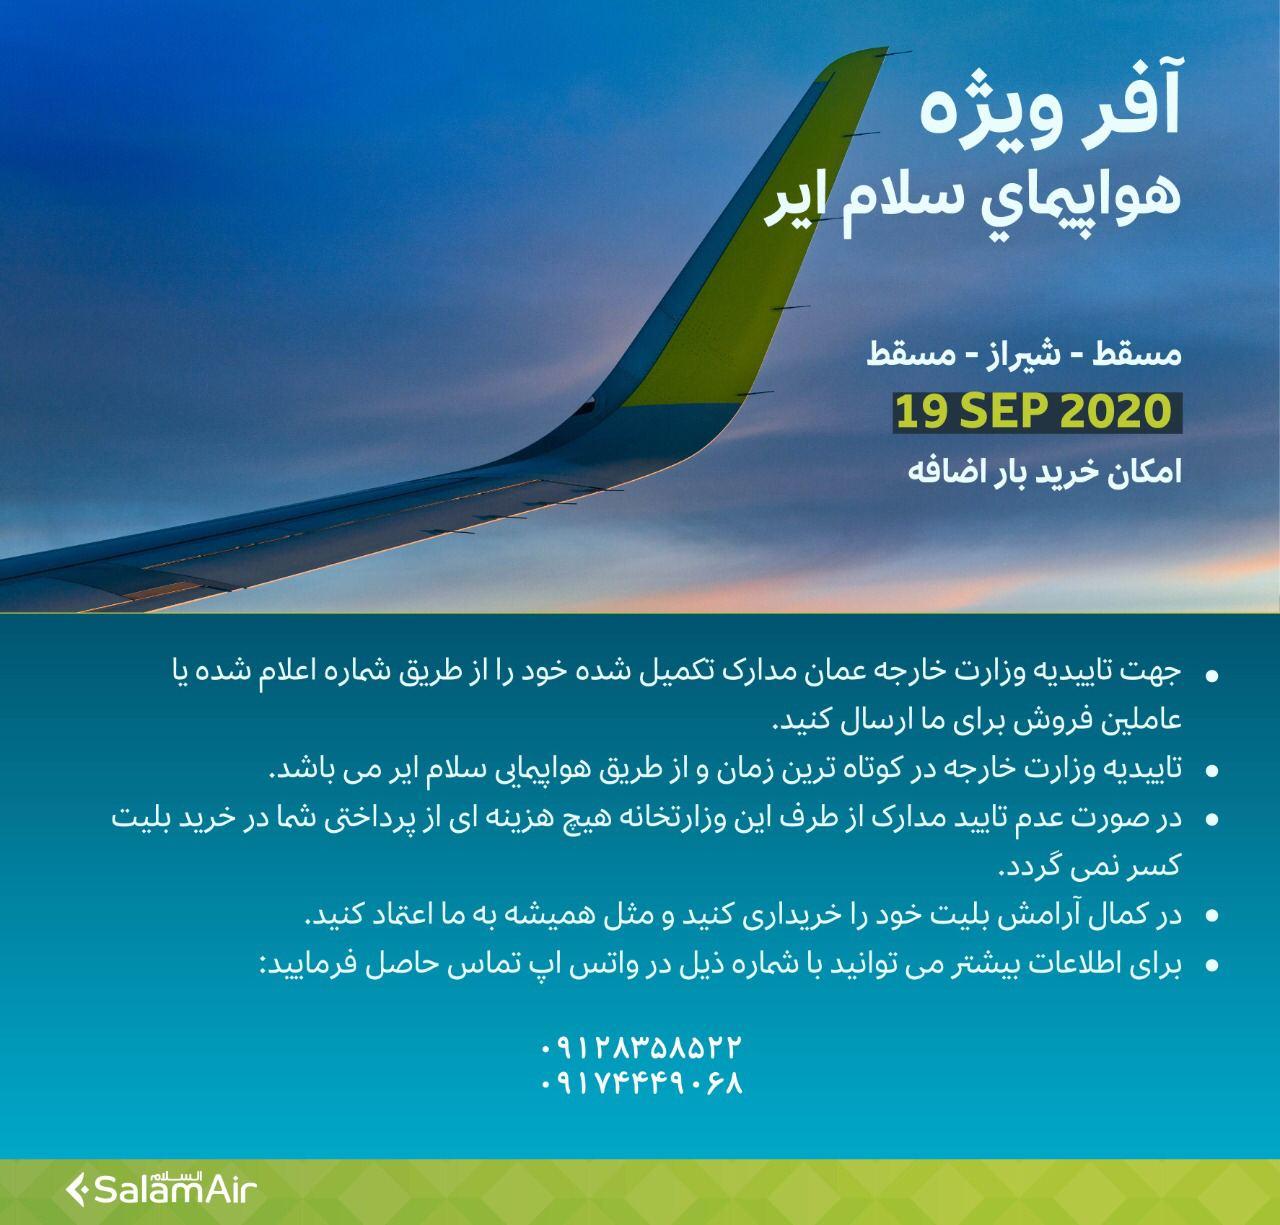 بخشنامه و اطلاعیه   هواپیمایی سلام ایر درباره مسقط - شیراز - مسقط از تاریخ : ۱۹ سپتامبر